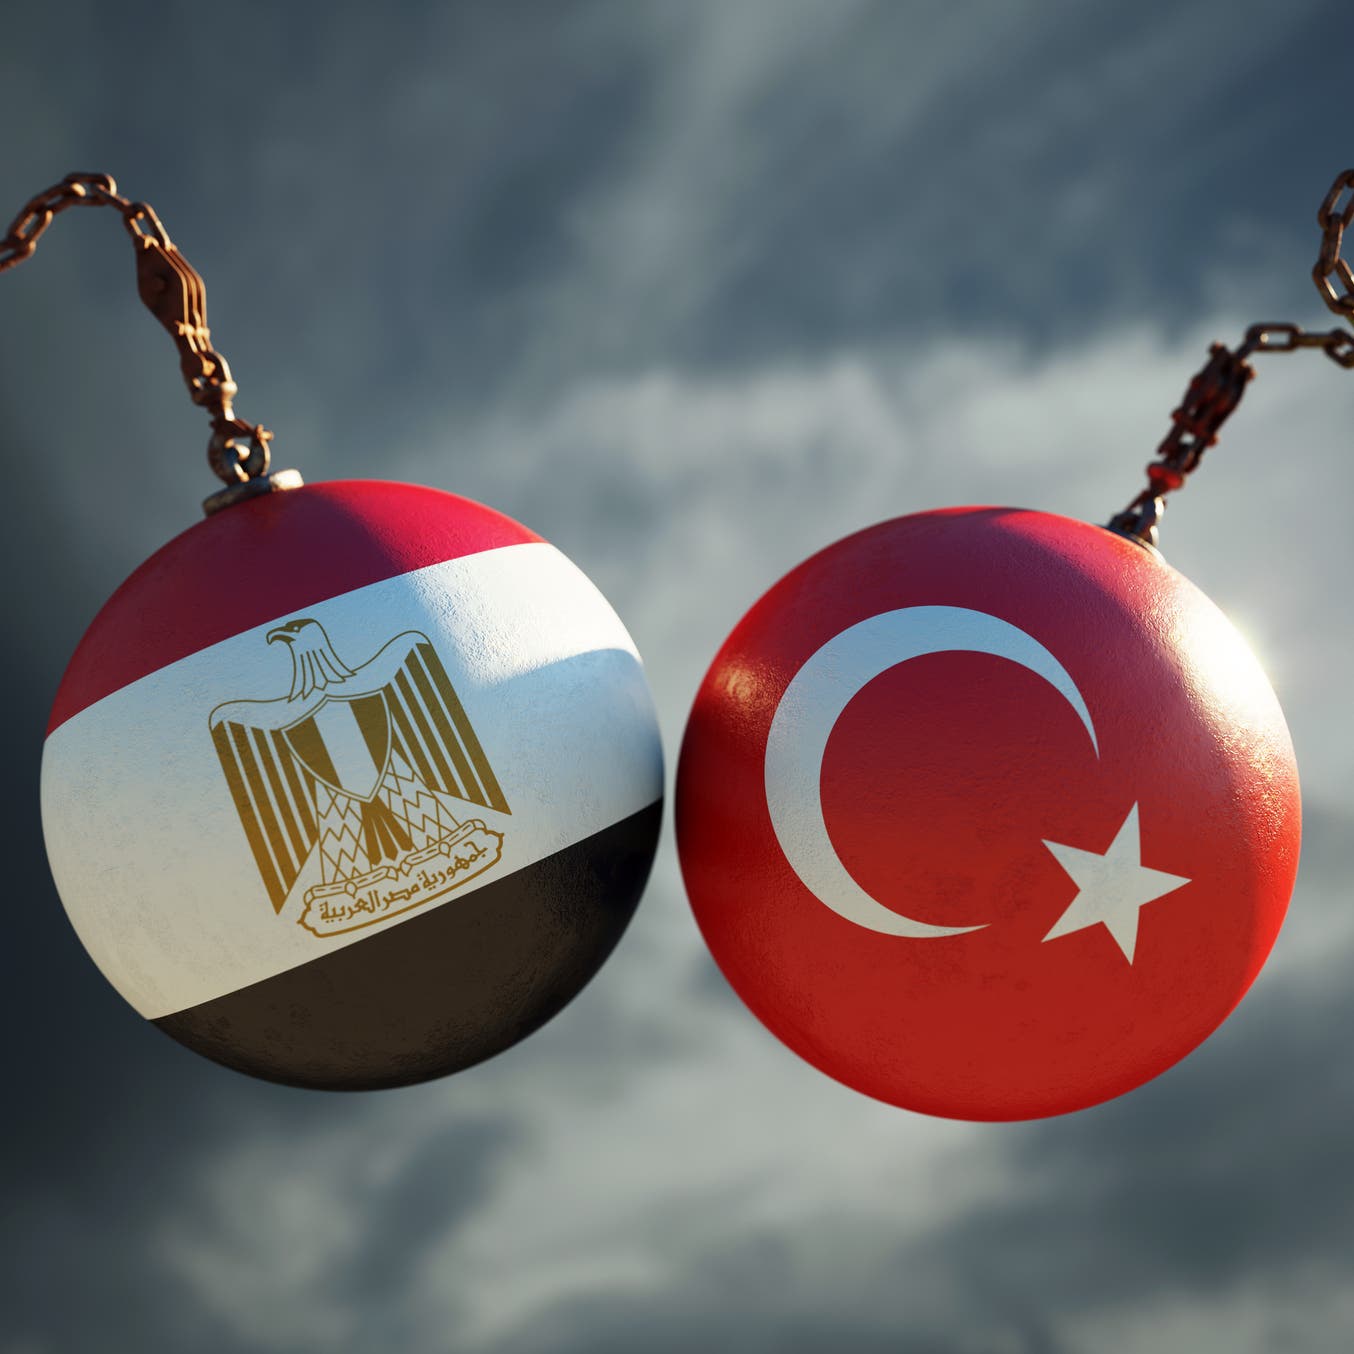 سر إنذار تركيا لمصر بالمسح في المتوسط .. وزير يكشف